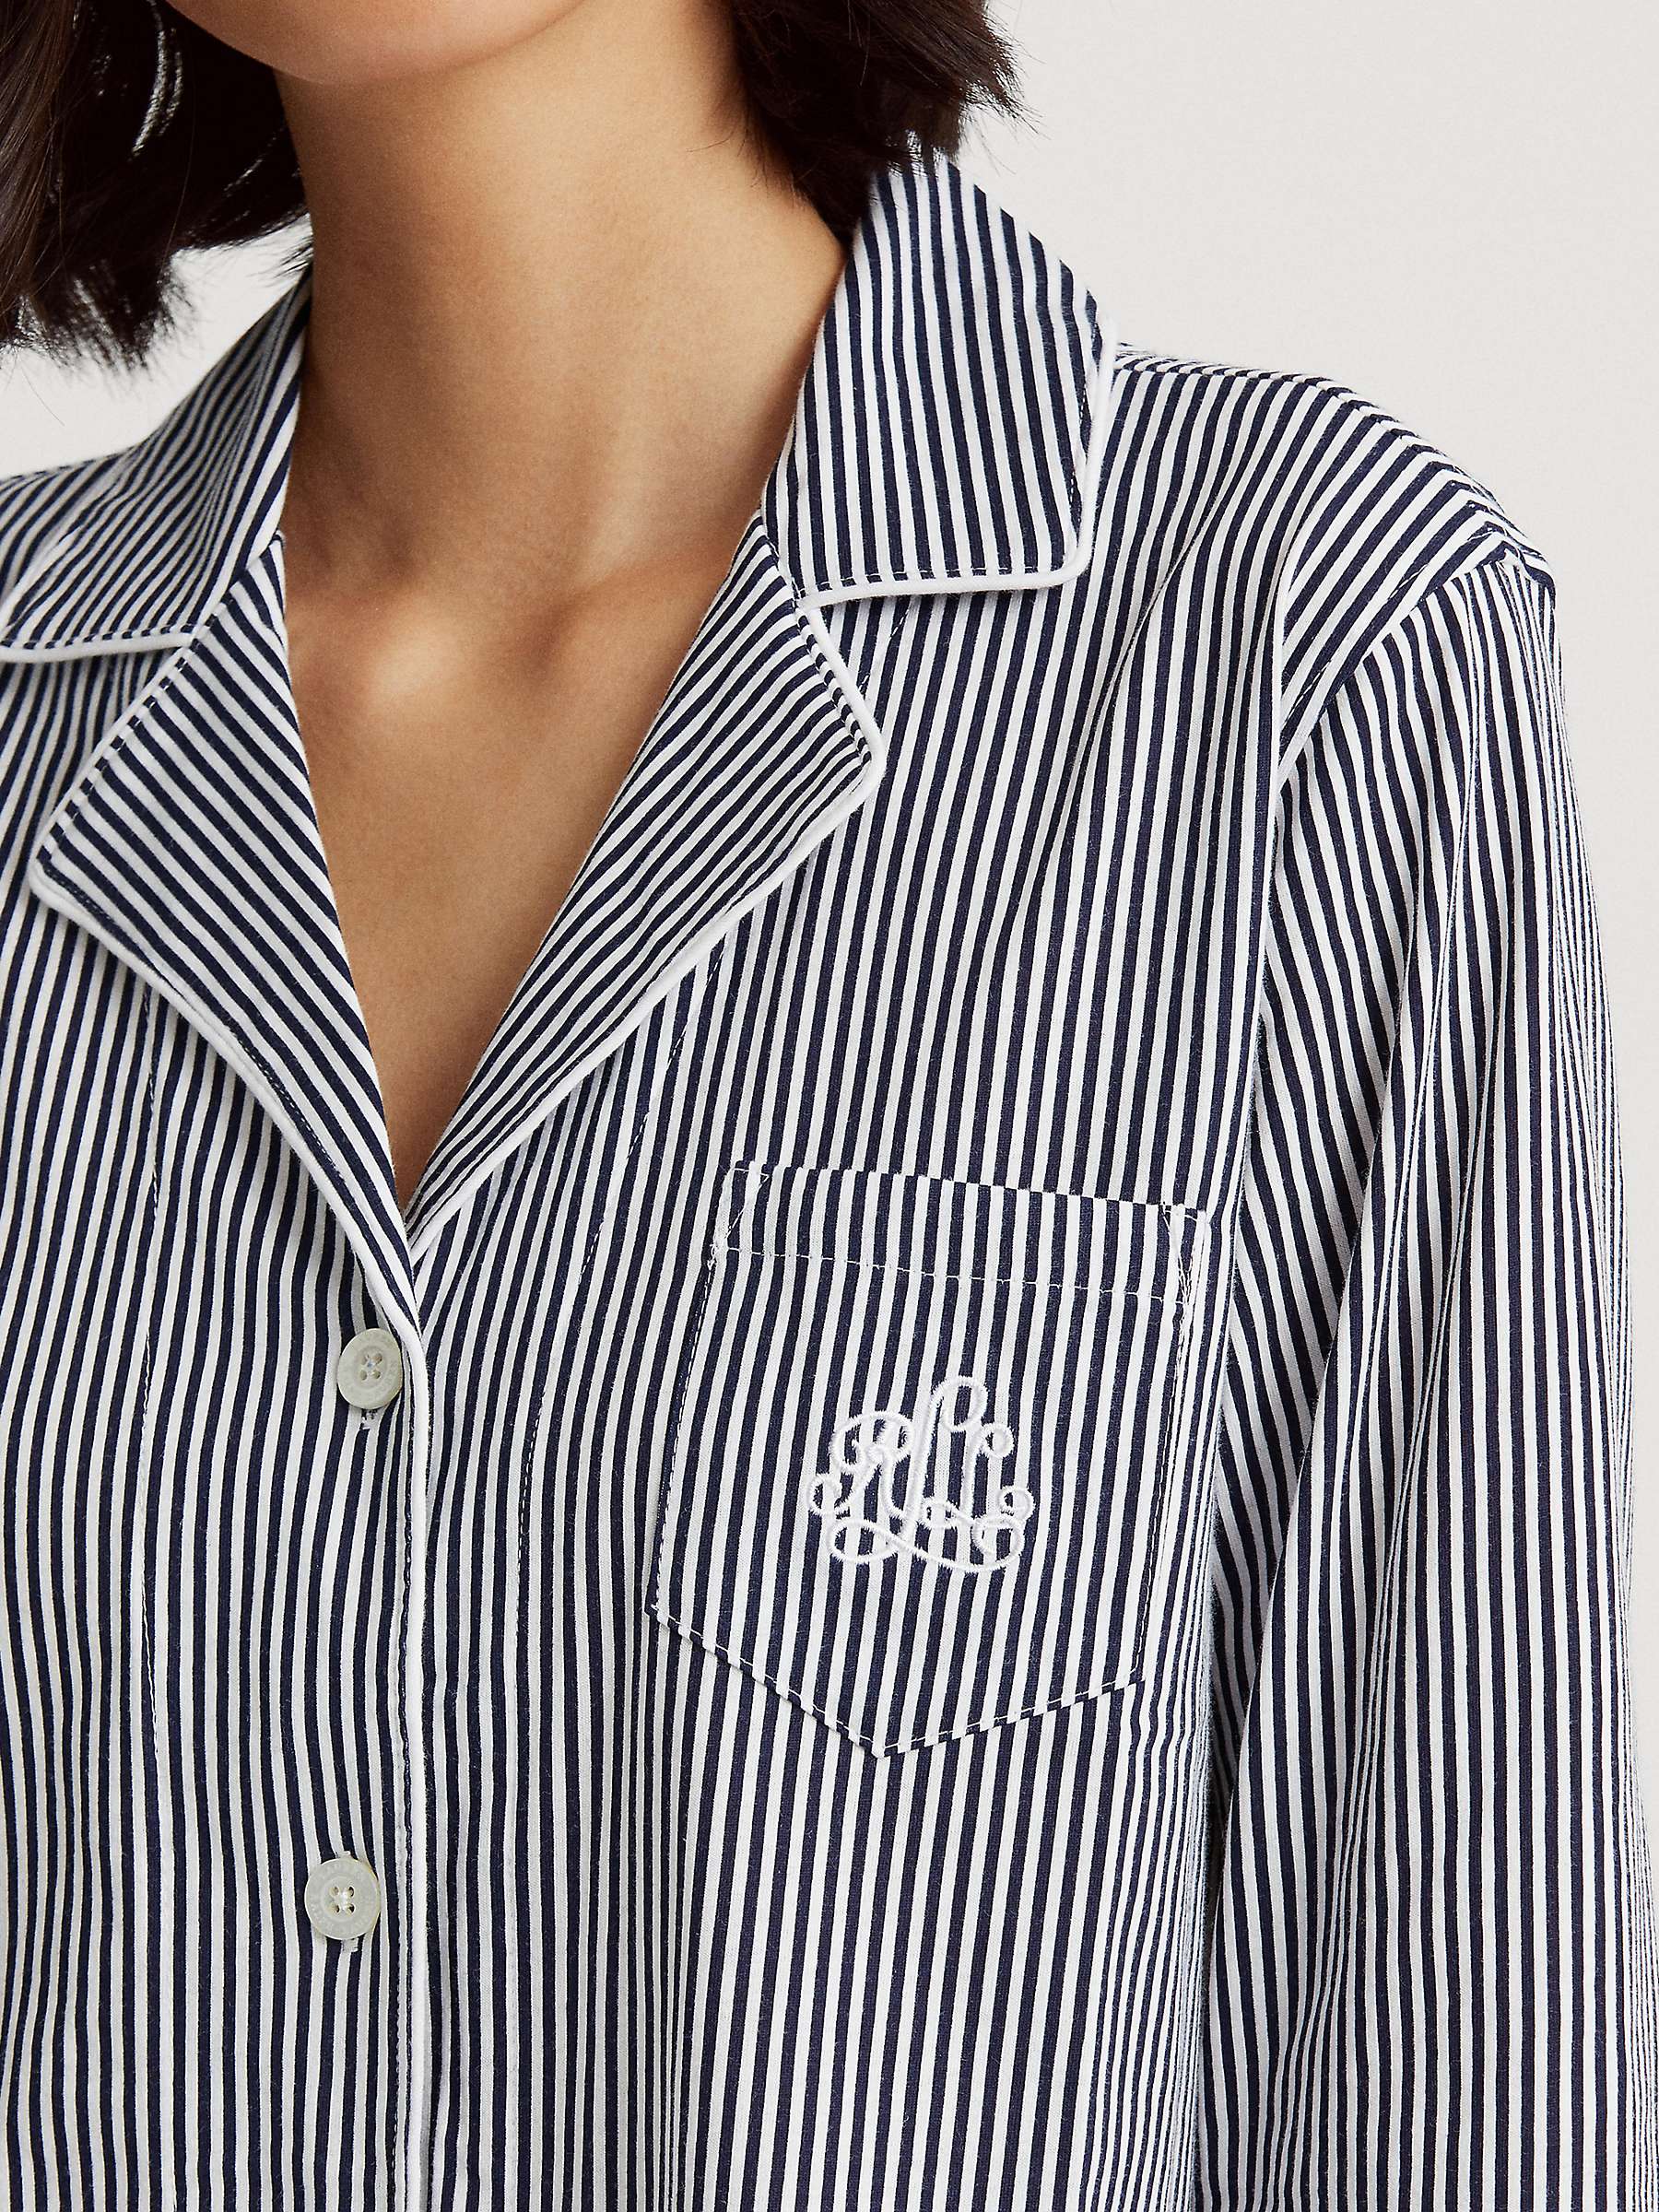 Buy Lauren Ralph Lauren 3/4 Sleeve Capri Stripe Pyjamas, Navy Online at johnlewis.com